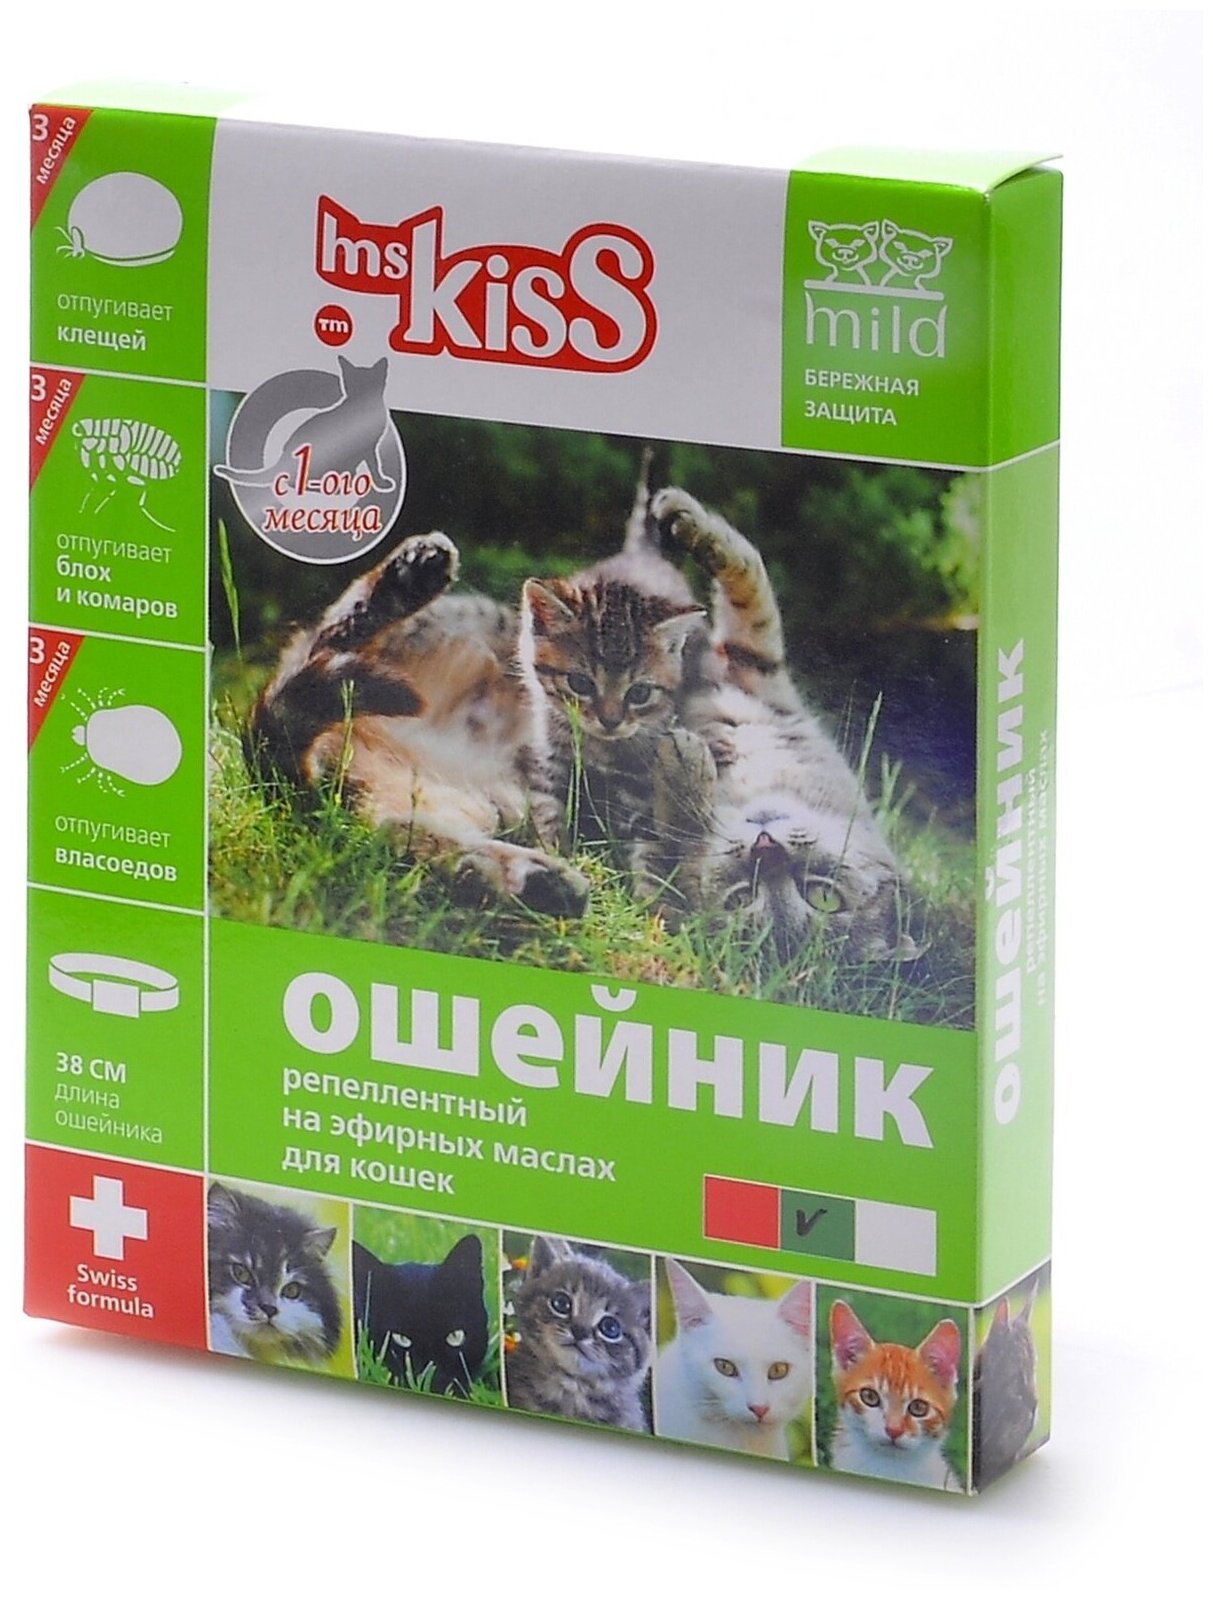 Ms.Kiss ошейник от блох и клещей New для котят, кошек, собак, для домашних животных, 38 см, зеленый